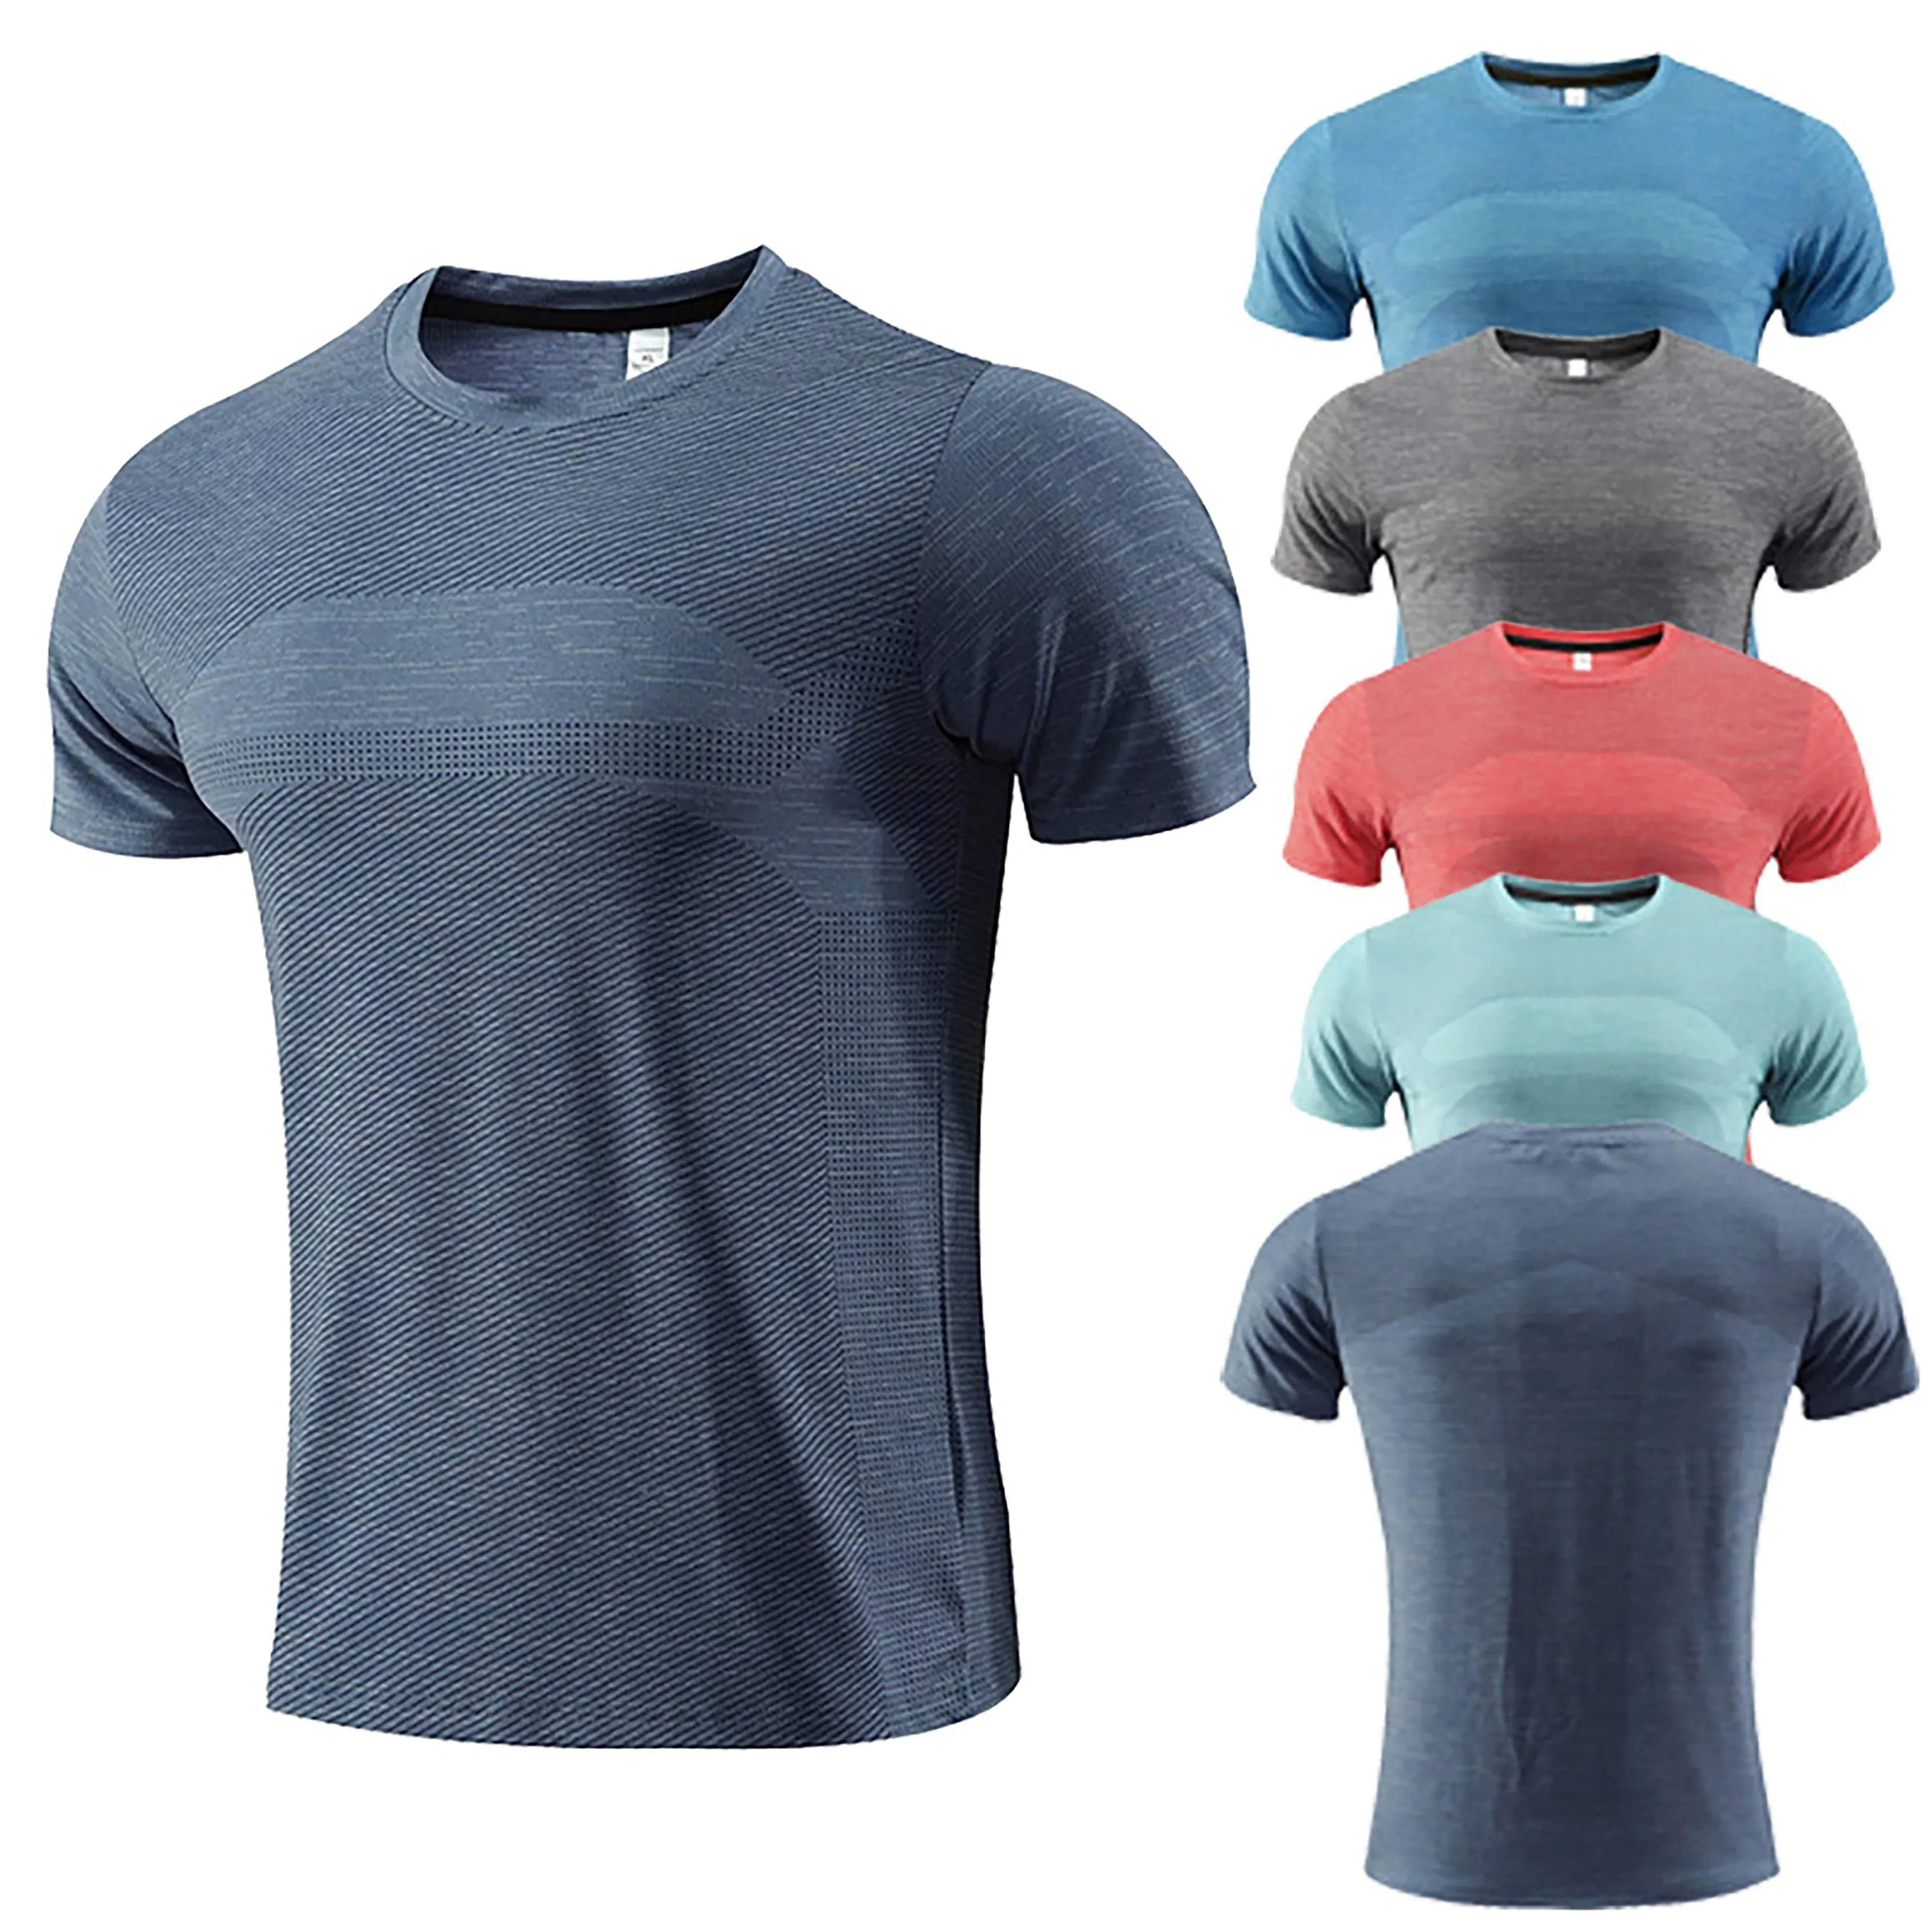 LL Camisas de entrenamiento para hombres de manga corta de secado rápido Athletic Gym Active T Shirt que absorbe la humedad